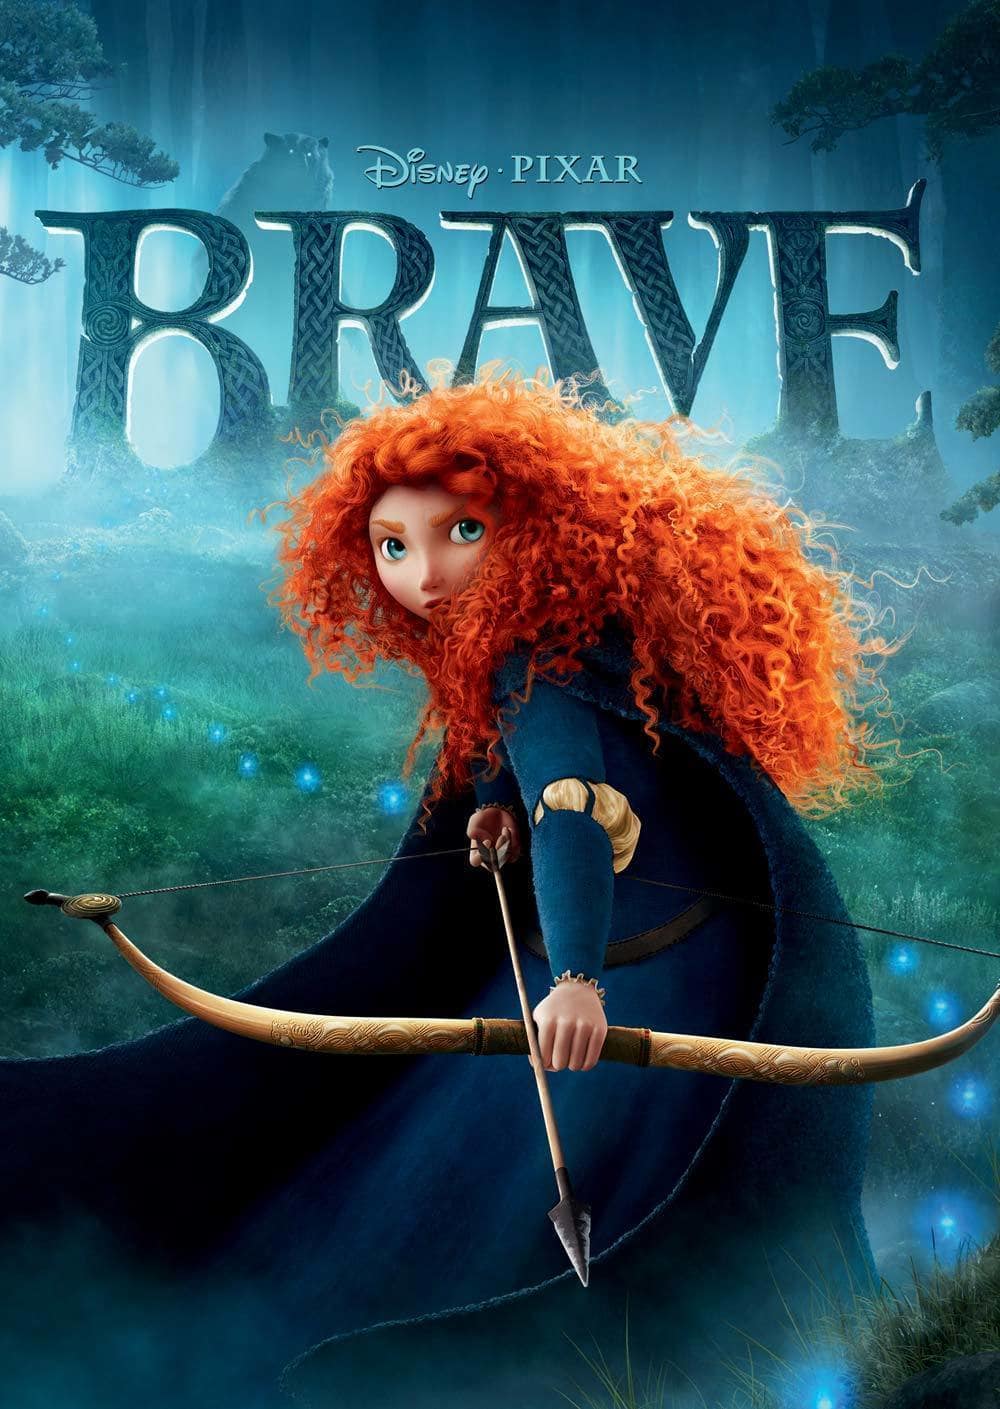 Pixar Brave Logo - Disney•Pixar Brave: The Video Game | Disney LOL